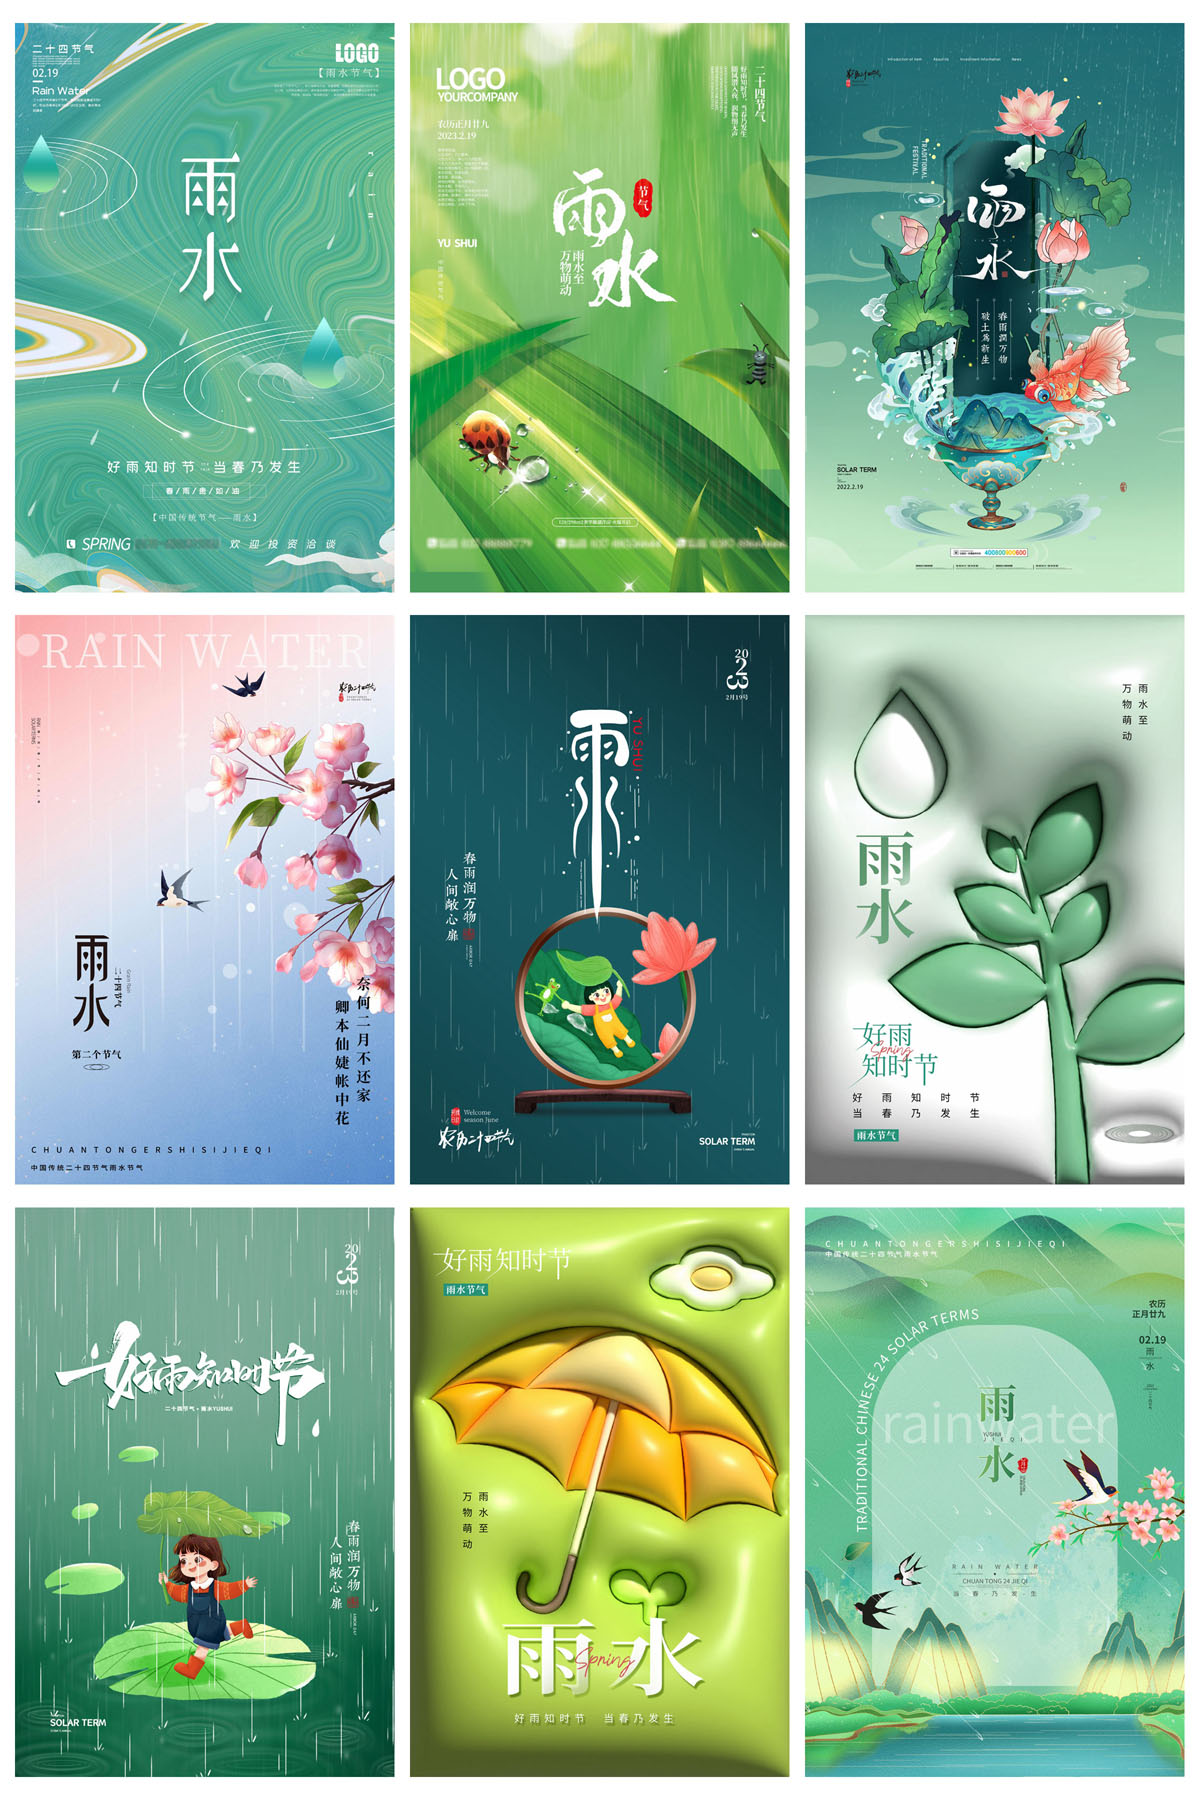 43款24节气雨水春天节日宣传海报模板PSD设计素材 设计素材 第7张